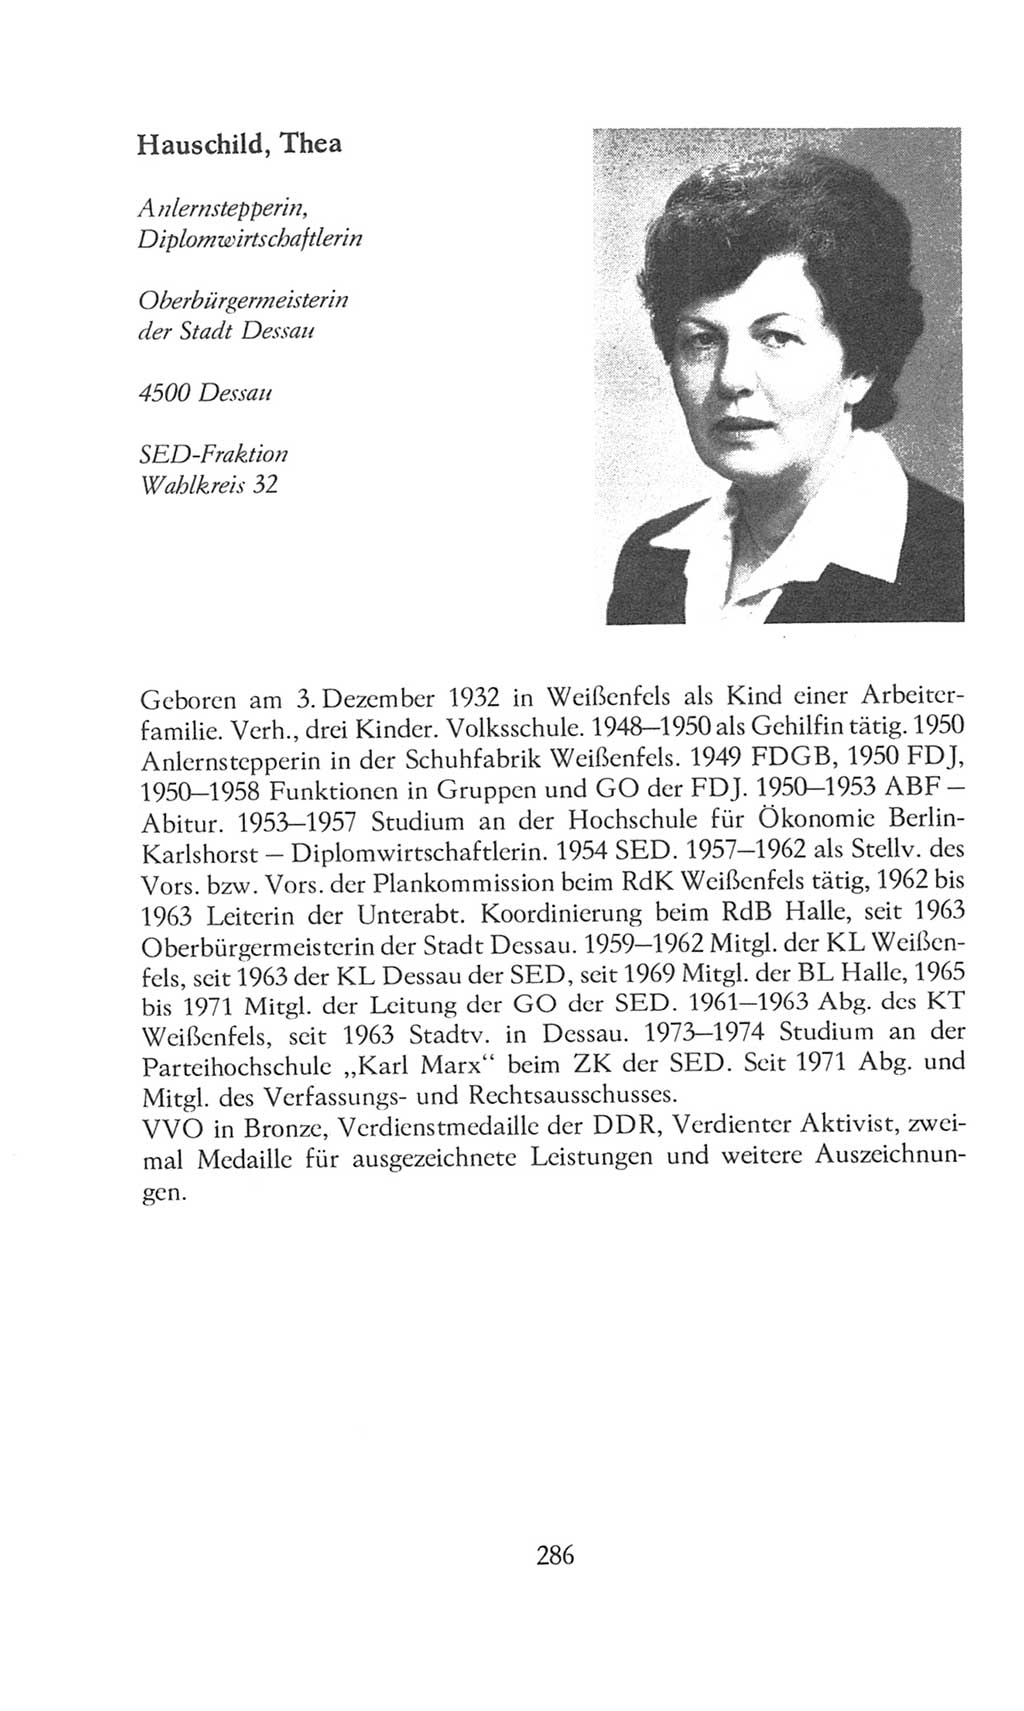 Volkskammer (VK) der Deutschen Demokratischen Republik (DDR), 8. Wahlperiode 1981-1986, Seite 286 (VK. DDR 8. WP. 1981-1986, S. 286)